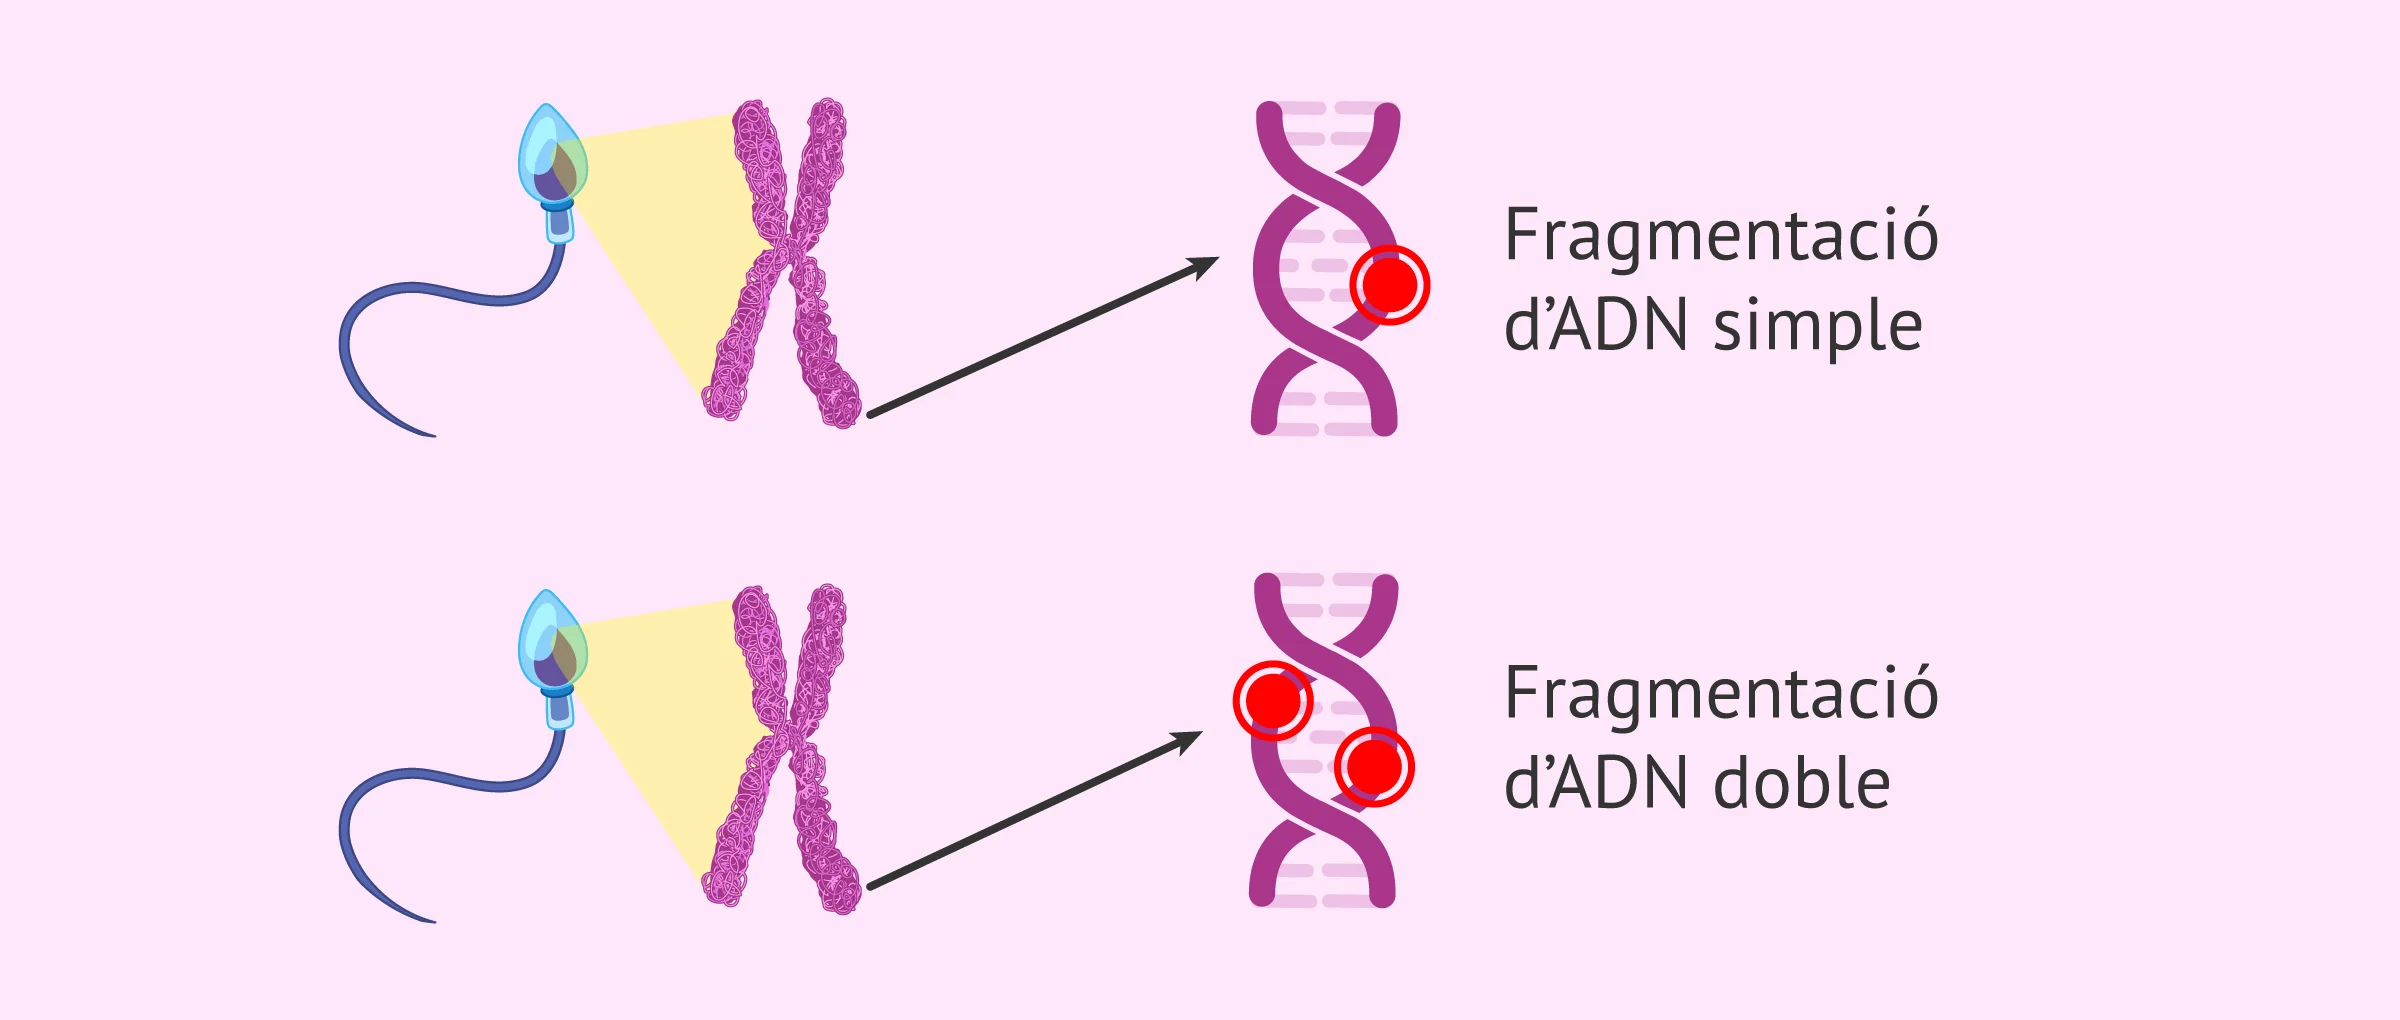 Fragmentació d'ADN espermàtic